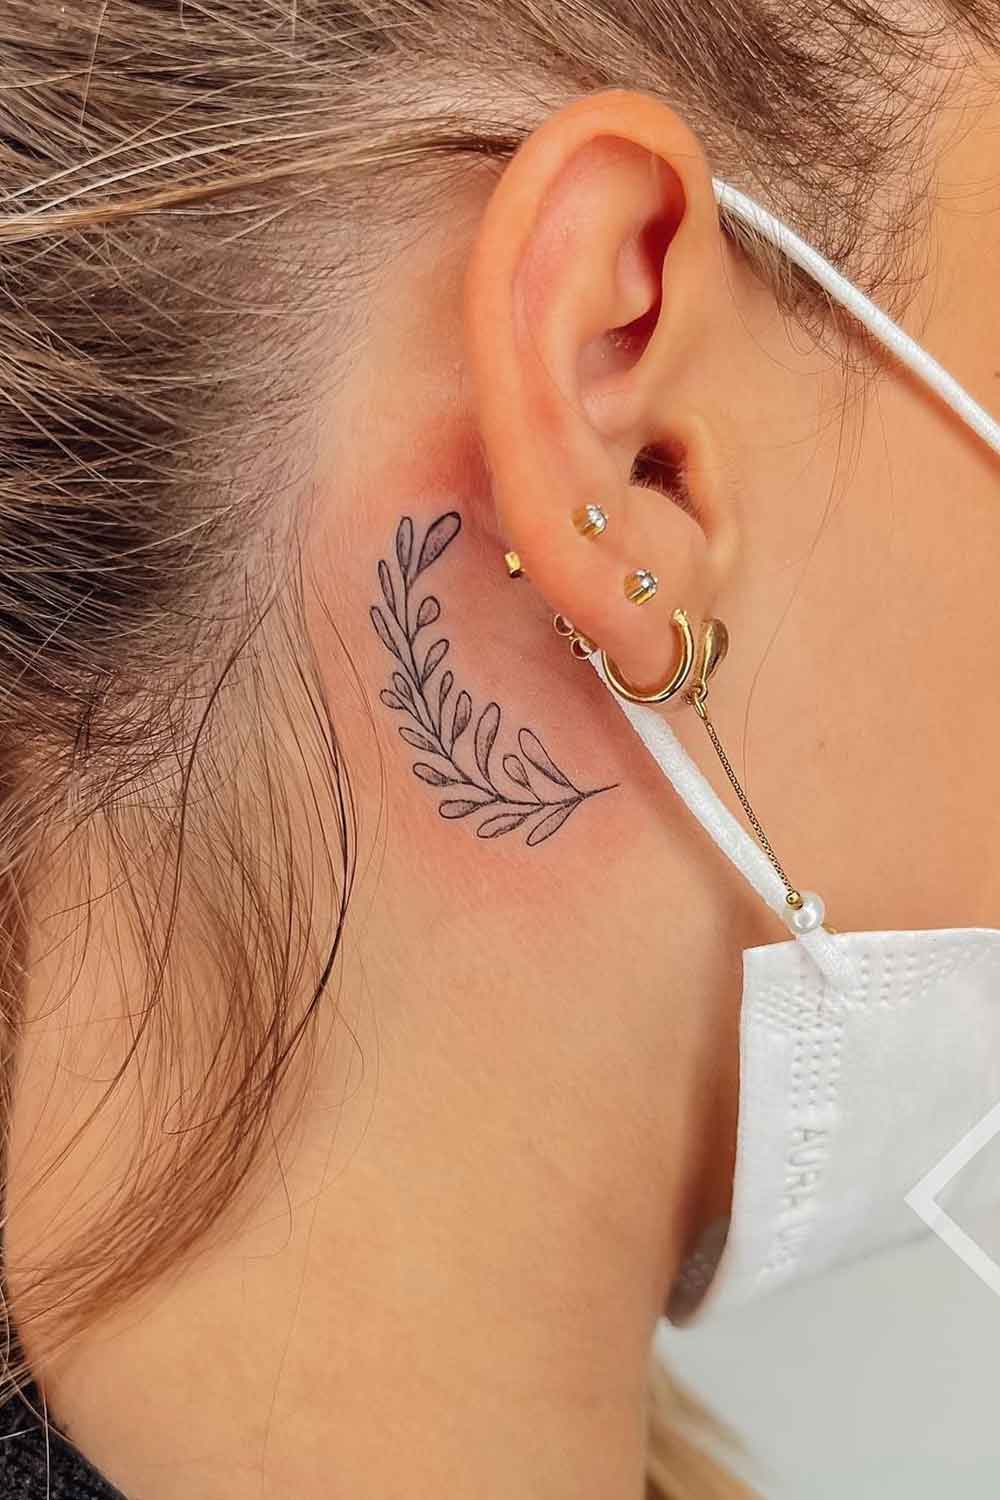 tatuagem-de-planta-atras-da-orelha 